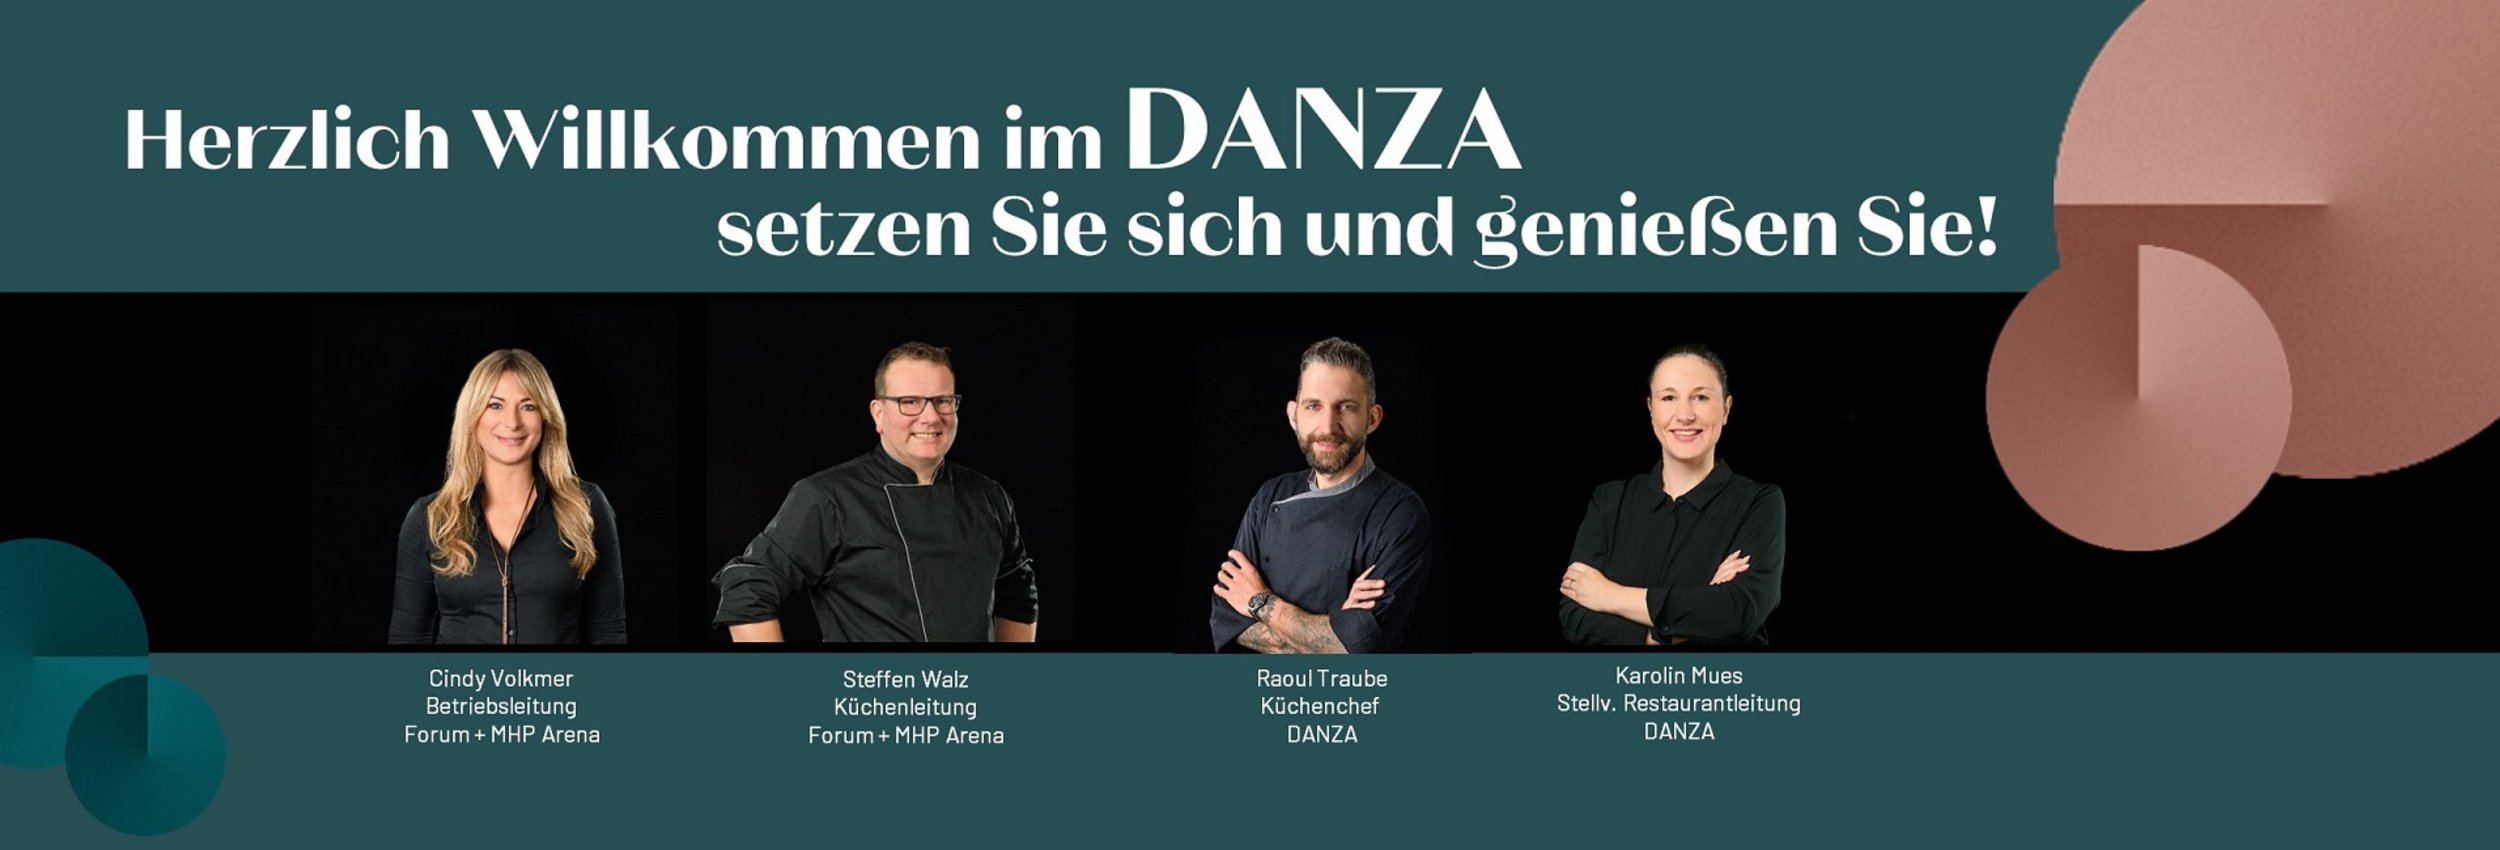 DANZA Restaurant & Weinbar | Better Taste GmbH